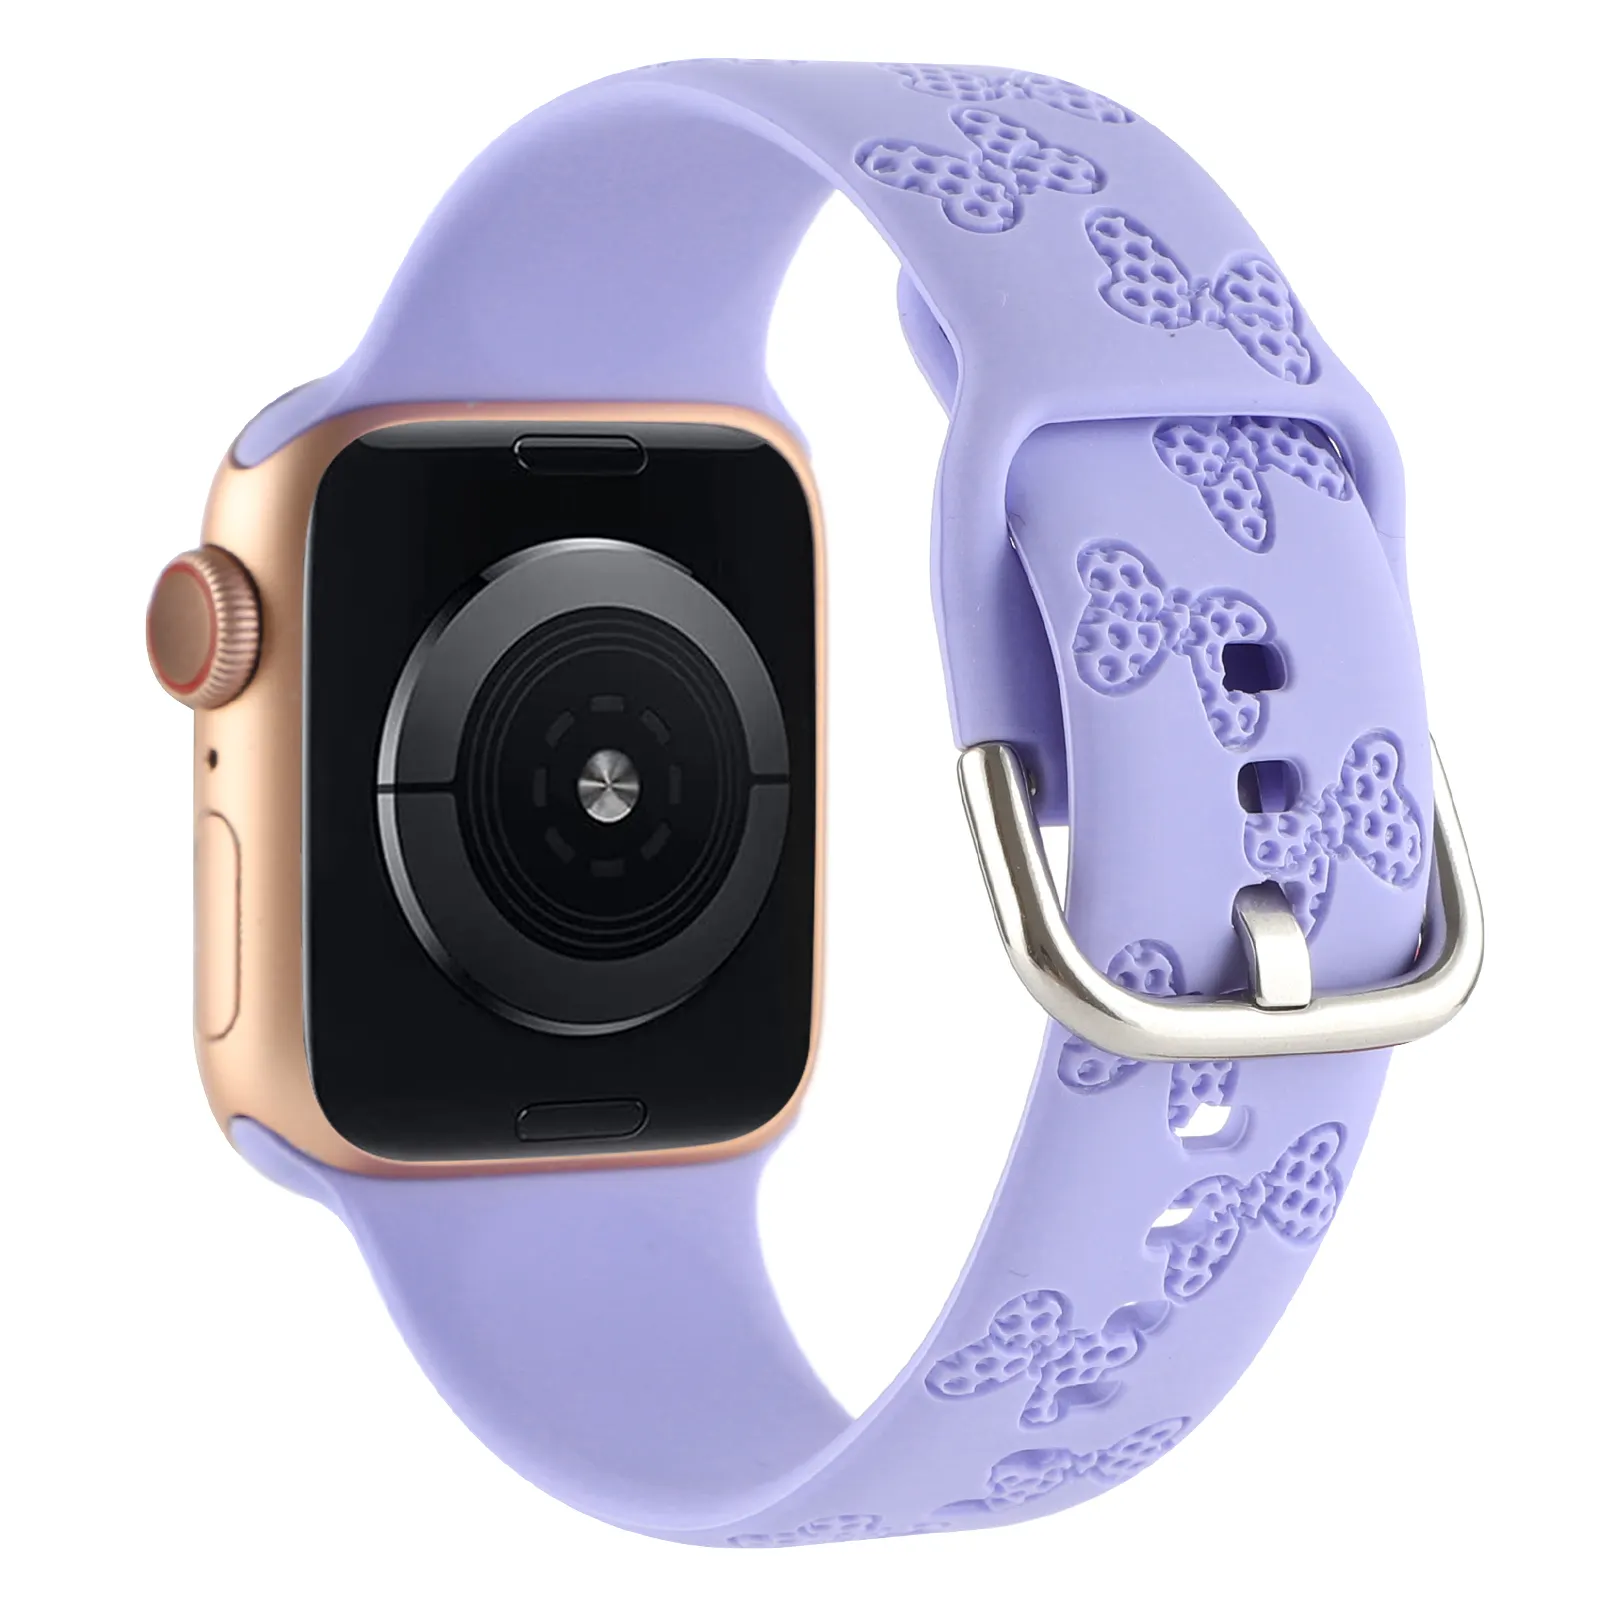 Pulseira de relógio inteligente de silicone, banda de relógio fofo gravado do mickey para apple watch